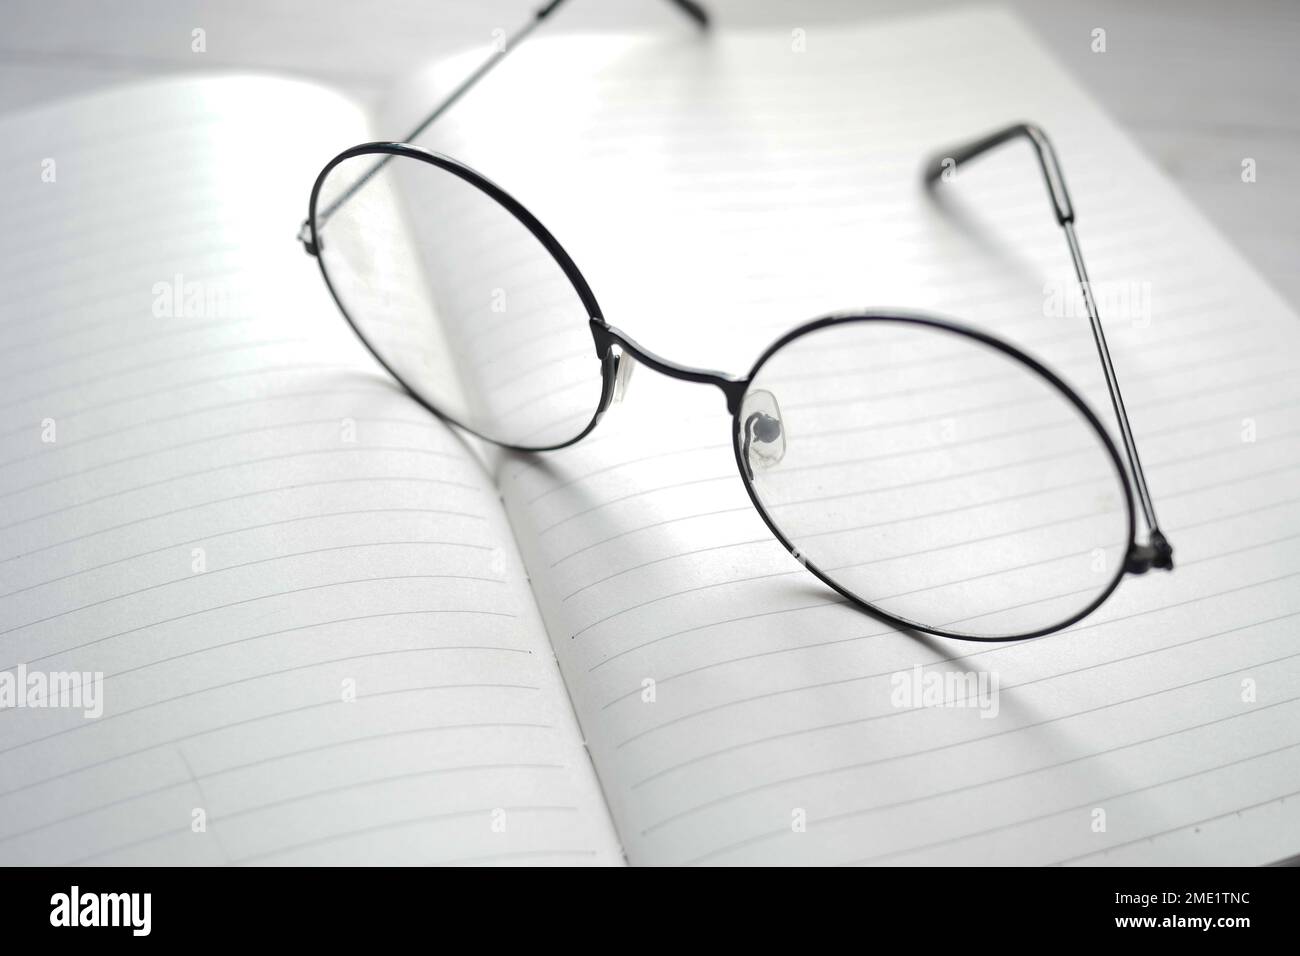 bloc-notes, lunettes et crayon sur table en bois Banque D'Images